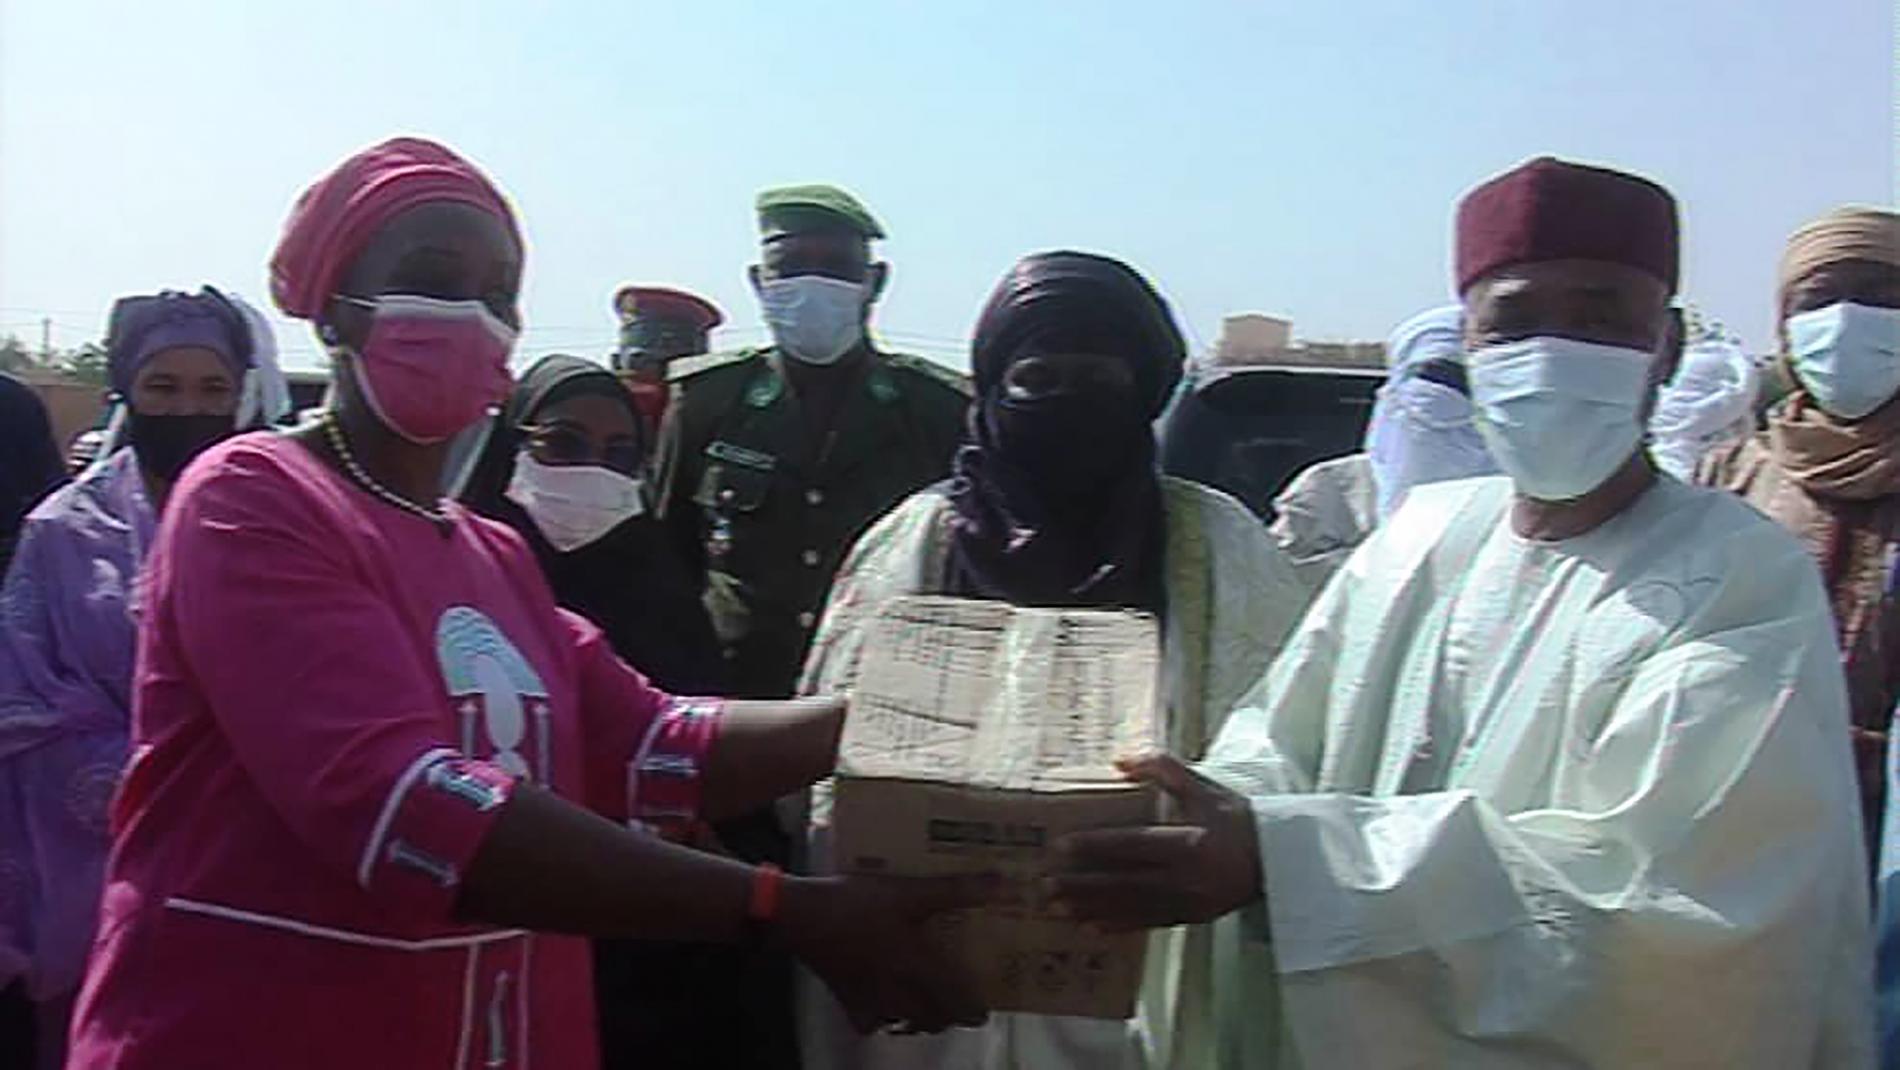 la Représentante de l’OMS remettant un échantillon du don au Gouverneur d’Agadez